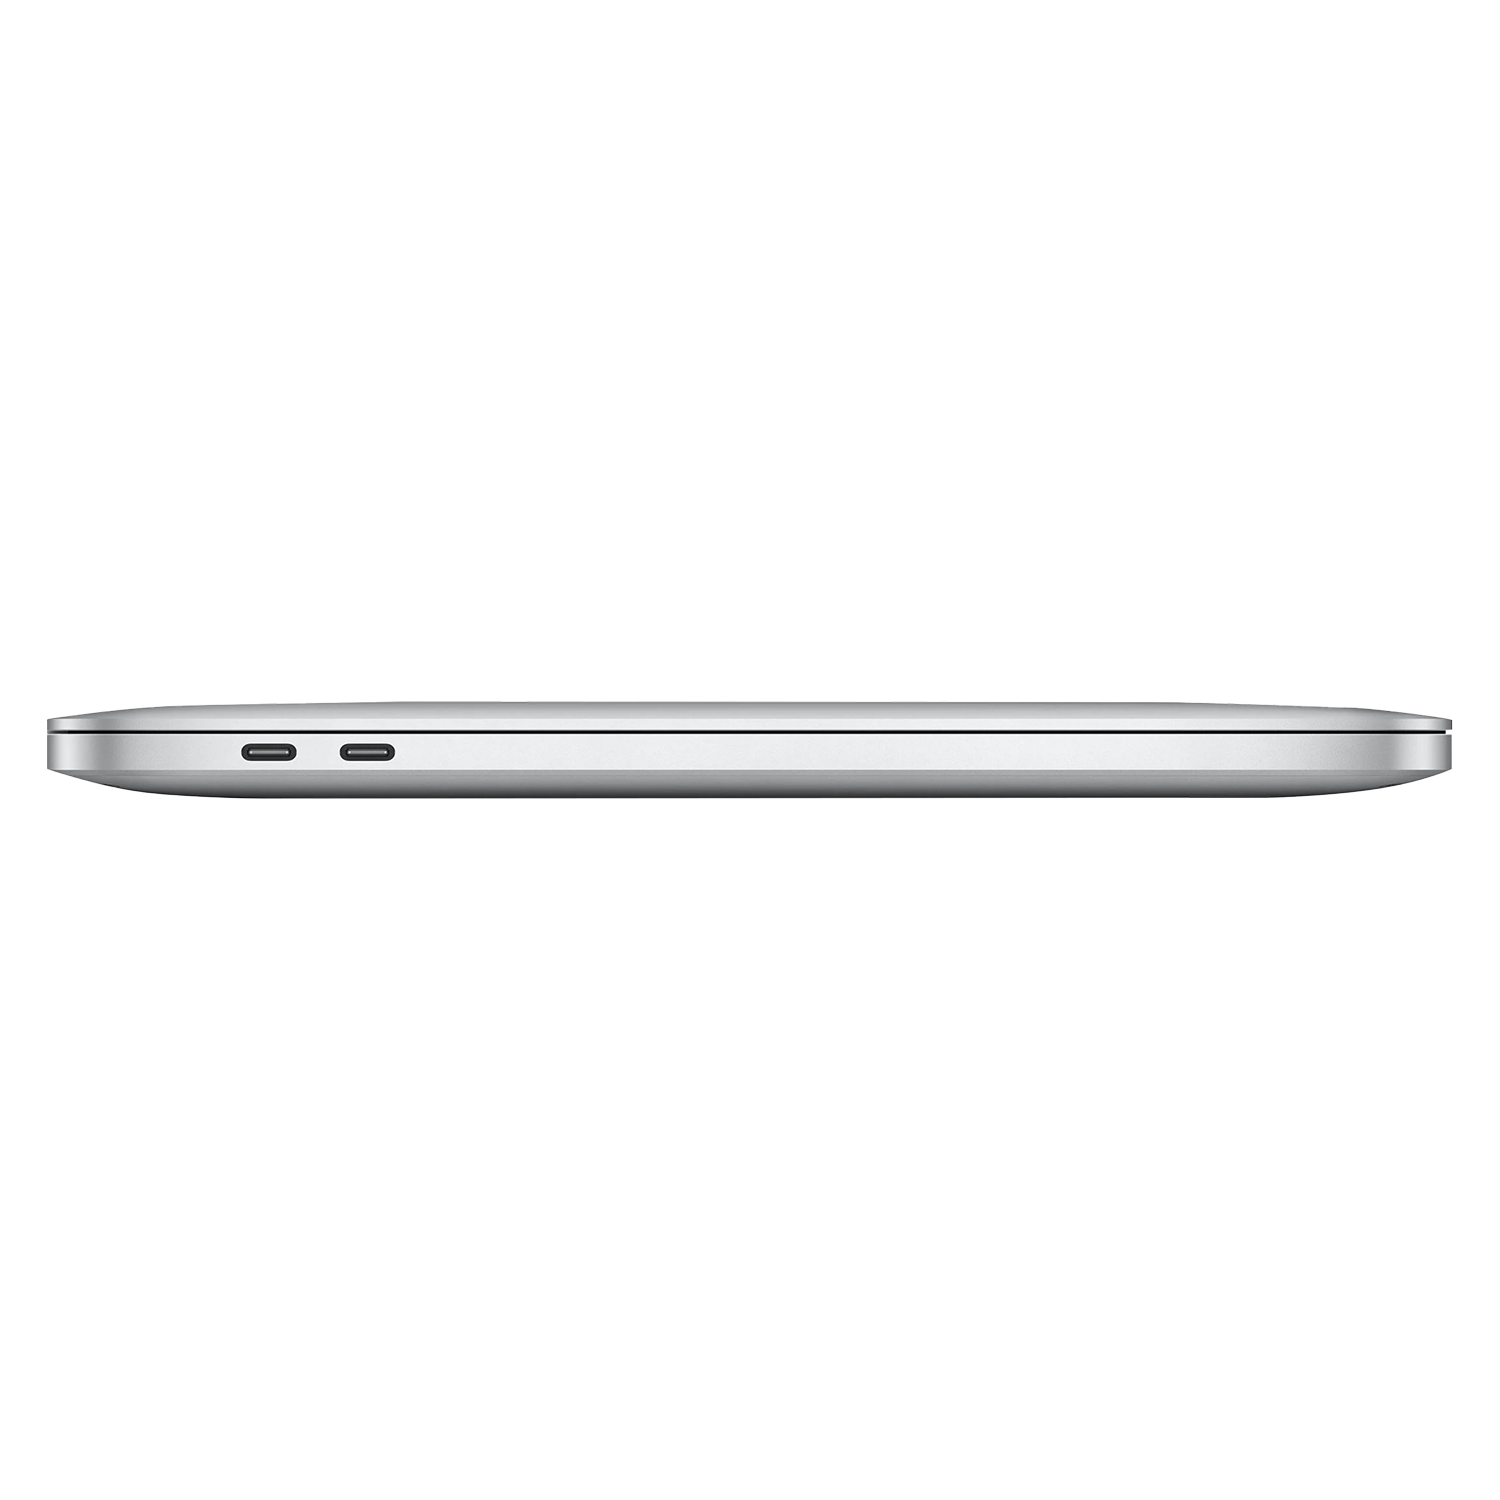 Apple Macbook Pro 2022 MNEQ3LL/A 13.3" Chip M2 512GB SSD / 8GB RAM - Prateado
